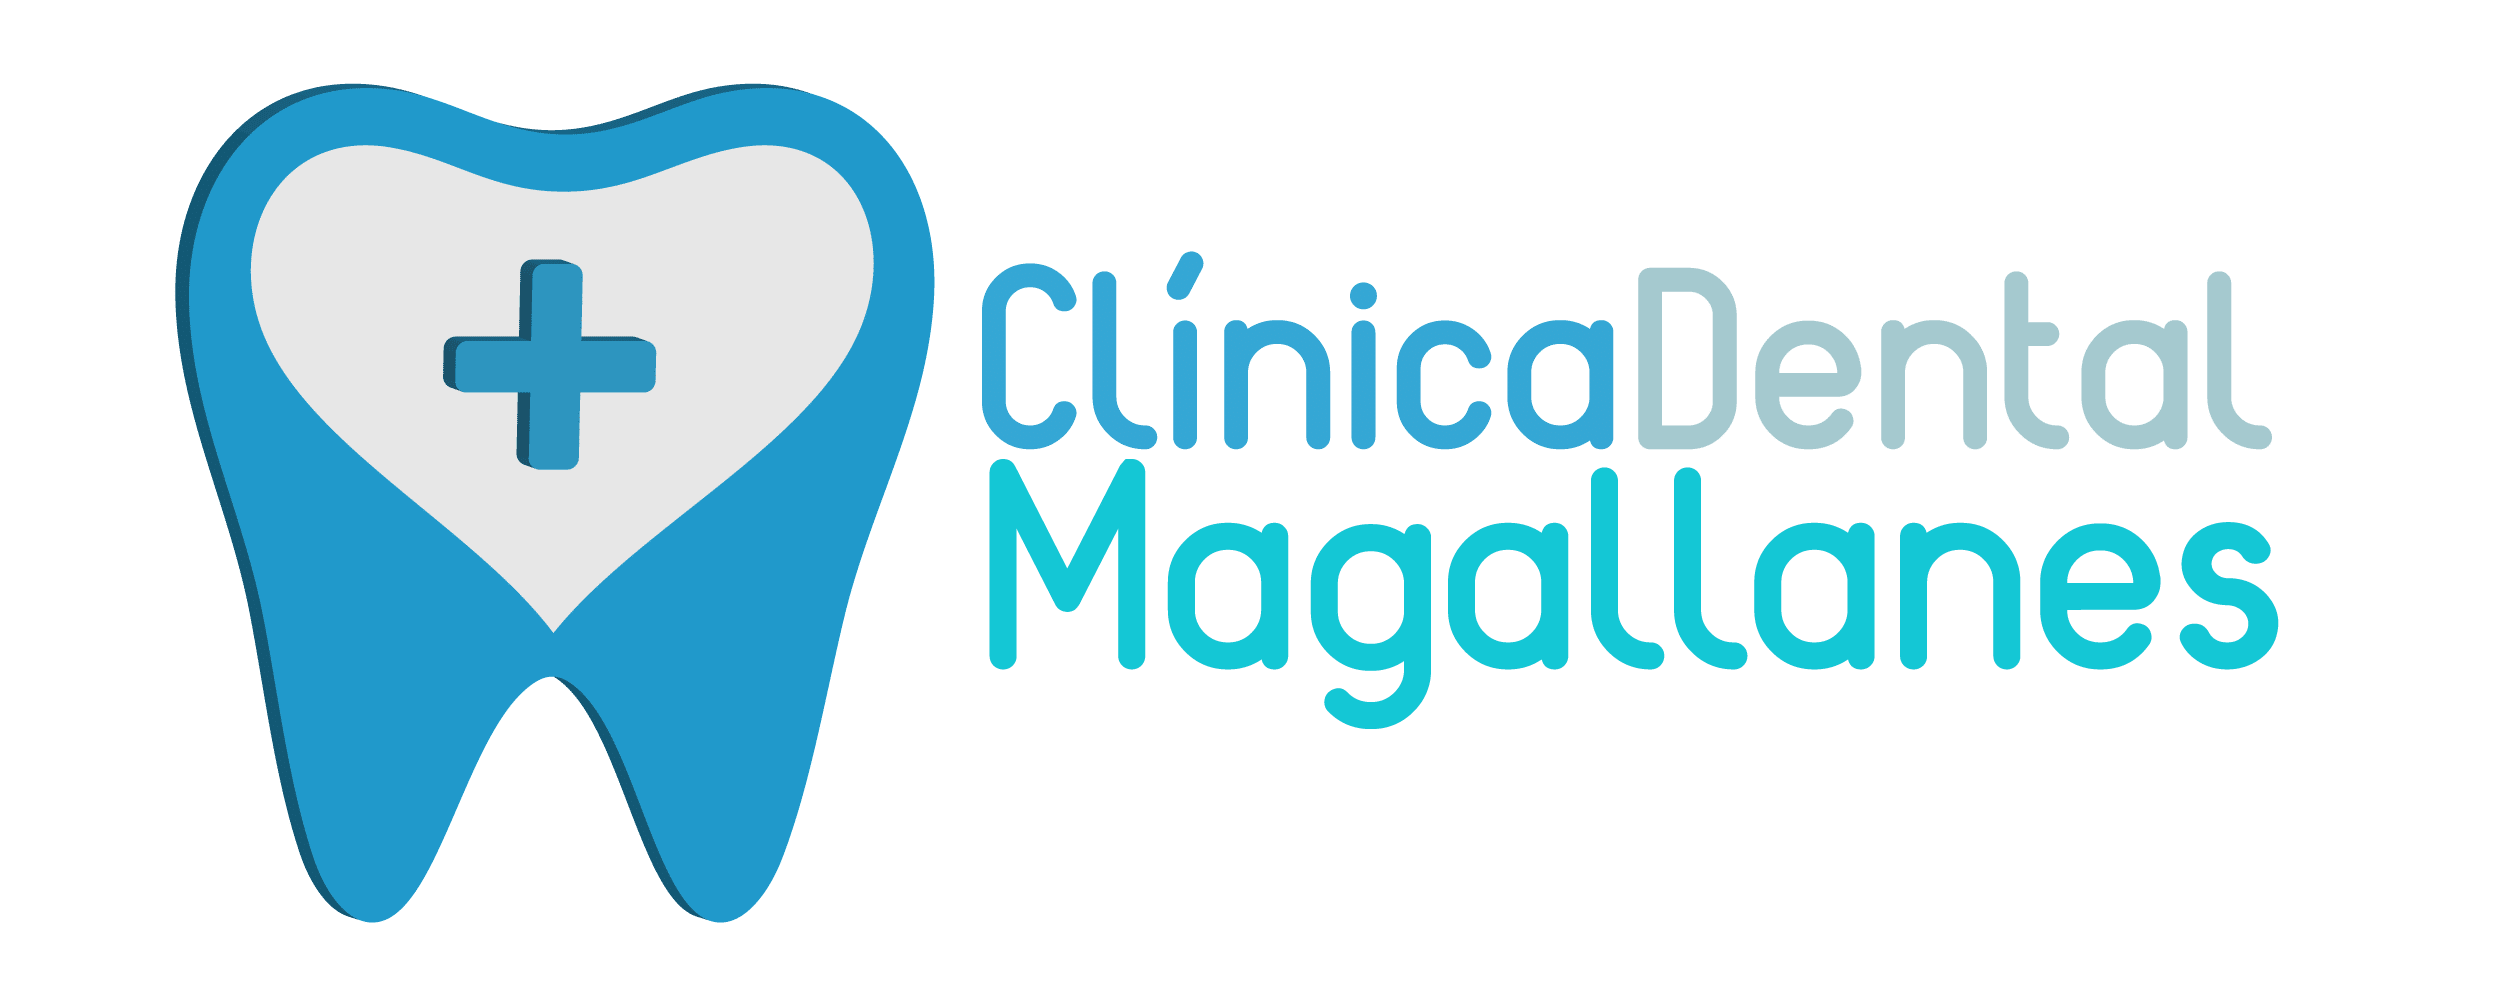 Dentista en Chamberí - Ortodoncia - Endodoncia - Implantes dentales -  Estética | Clínica Dental Magallanes